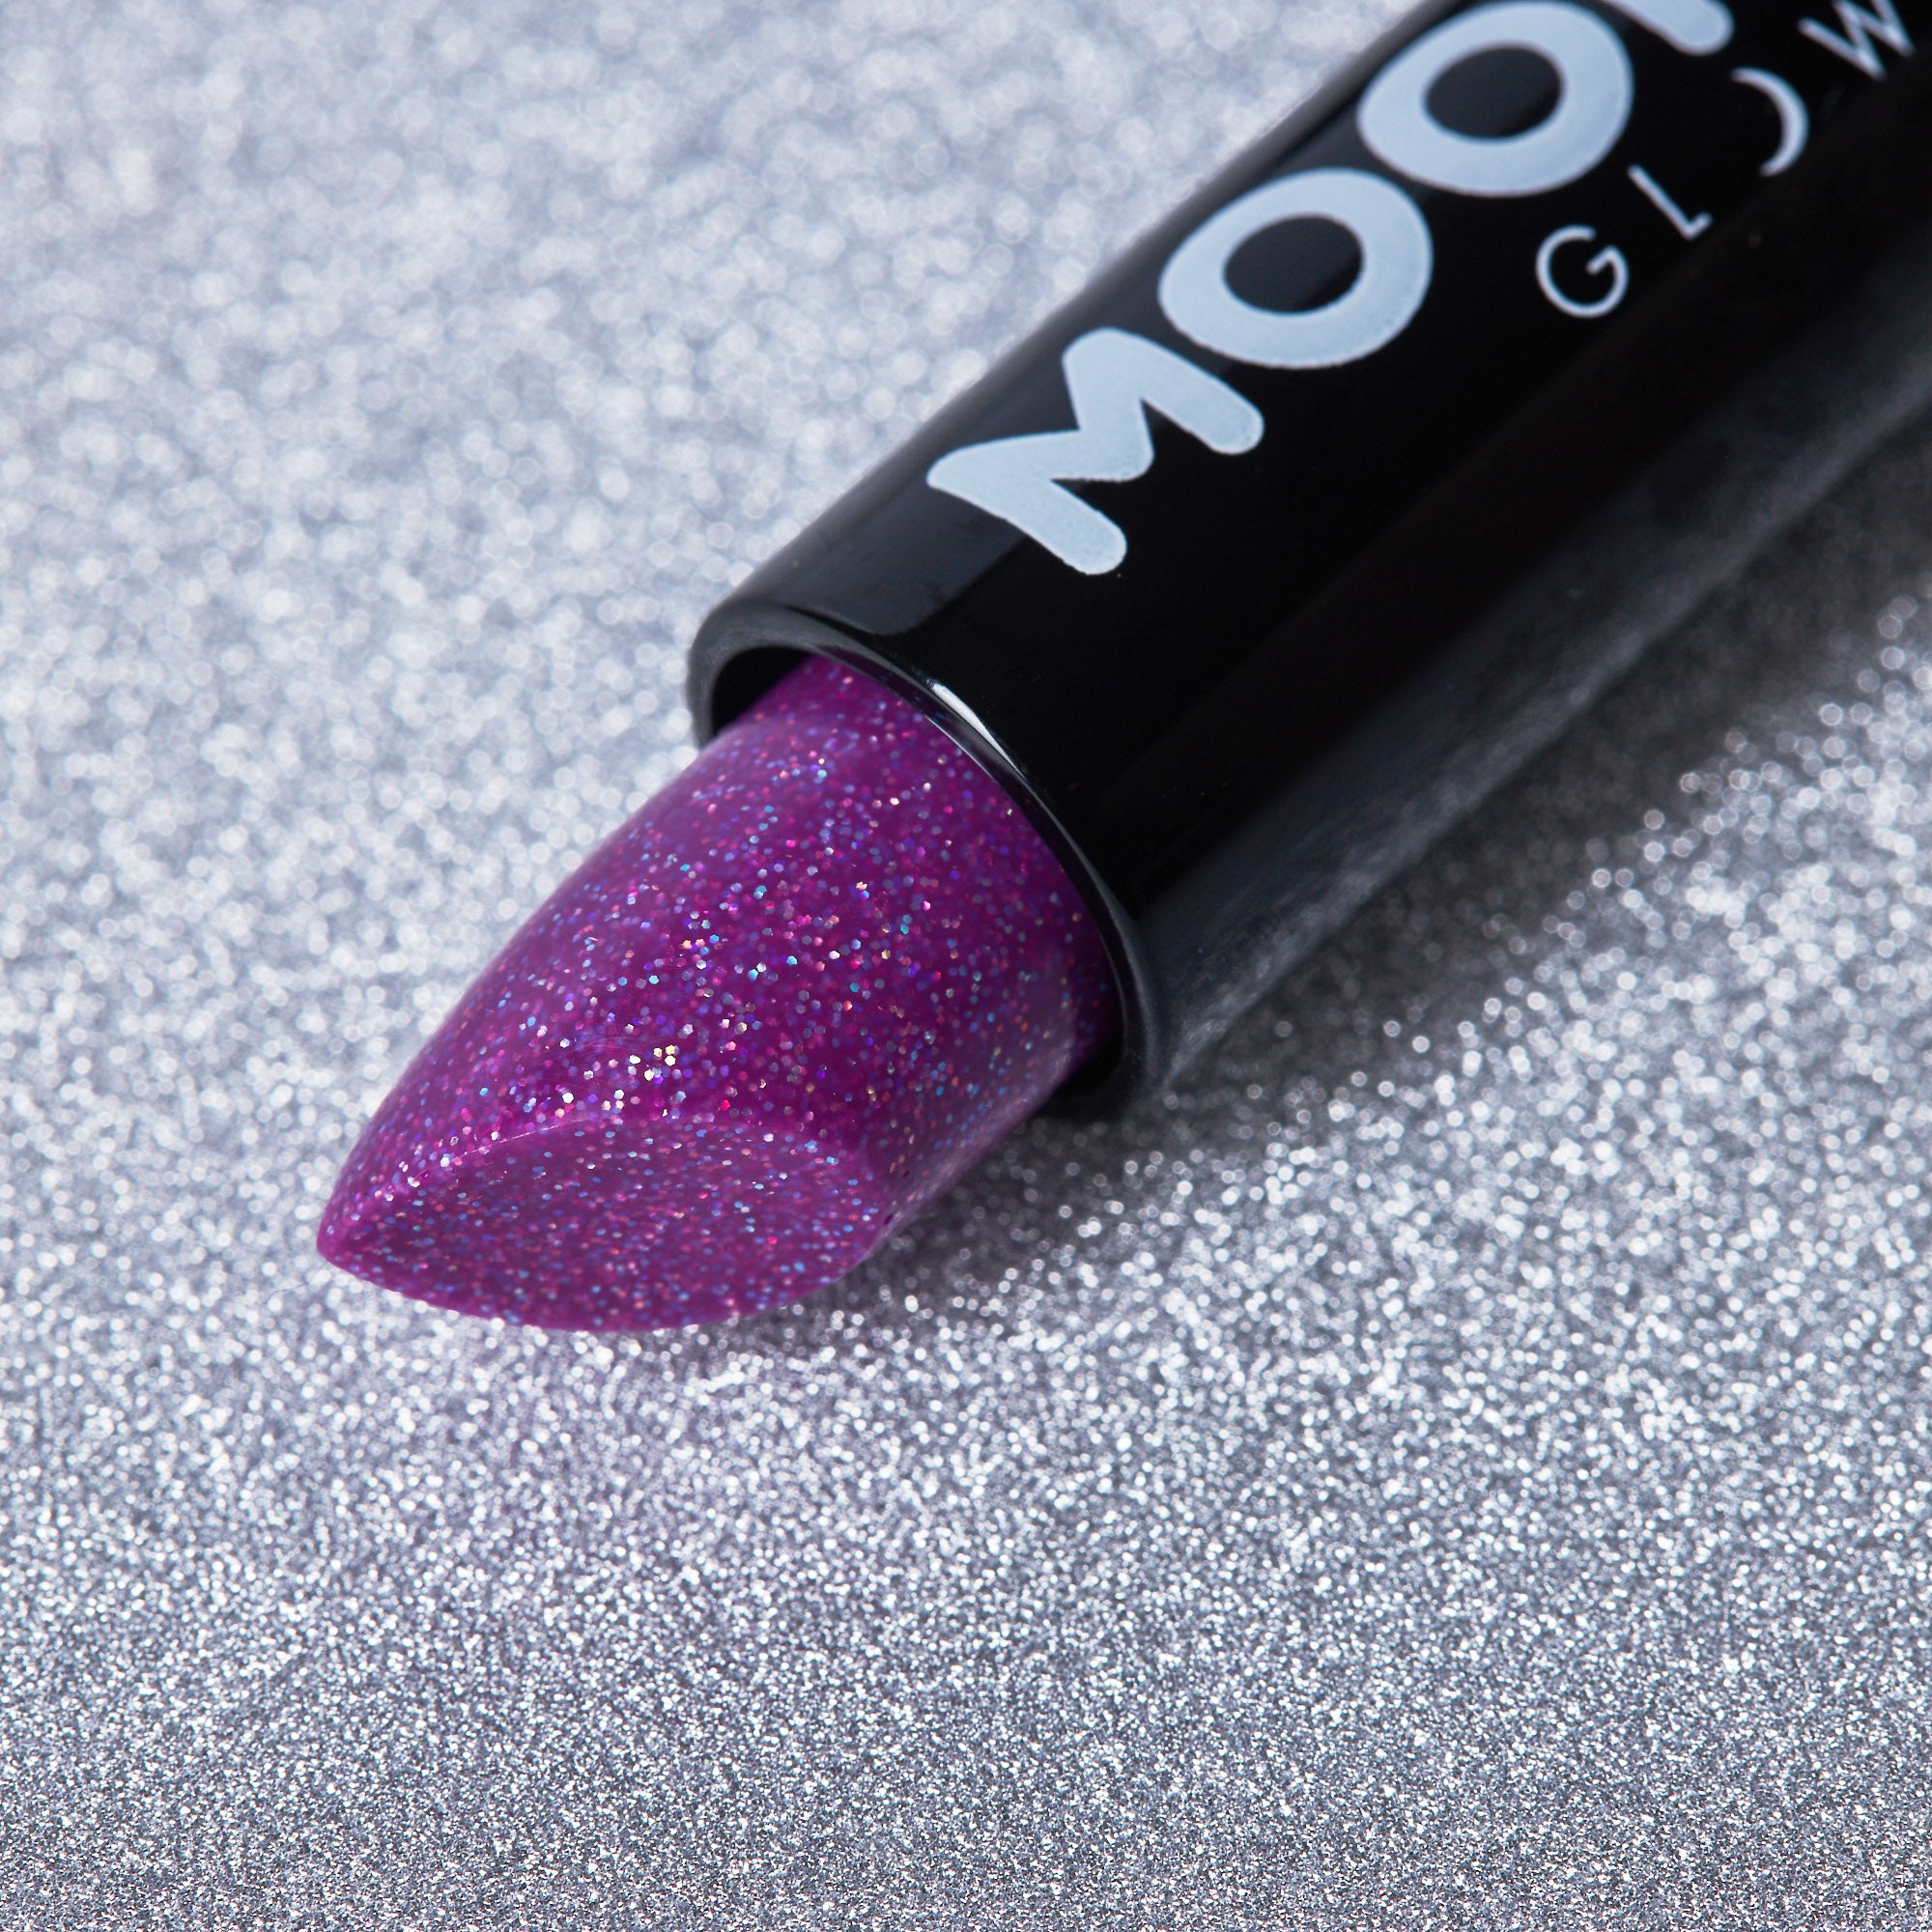 Purple - Neon UV Glow Blacklight Glitter Lipstick, 5g. Cosmetically certified, FDA & Health Canada compliant and cruelty free.